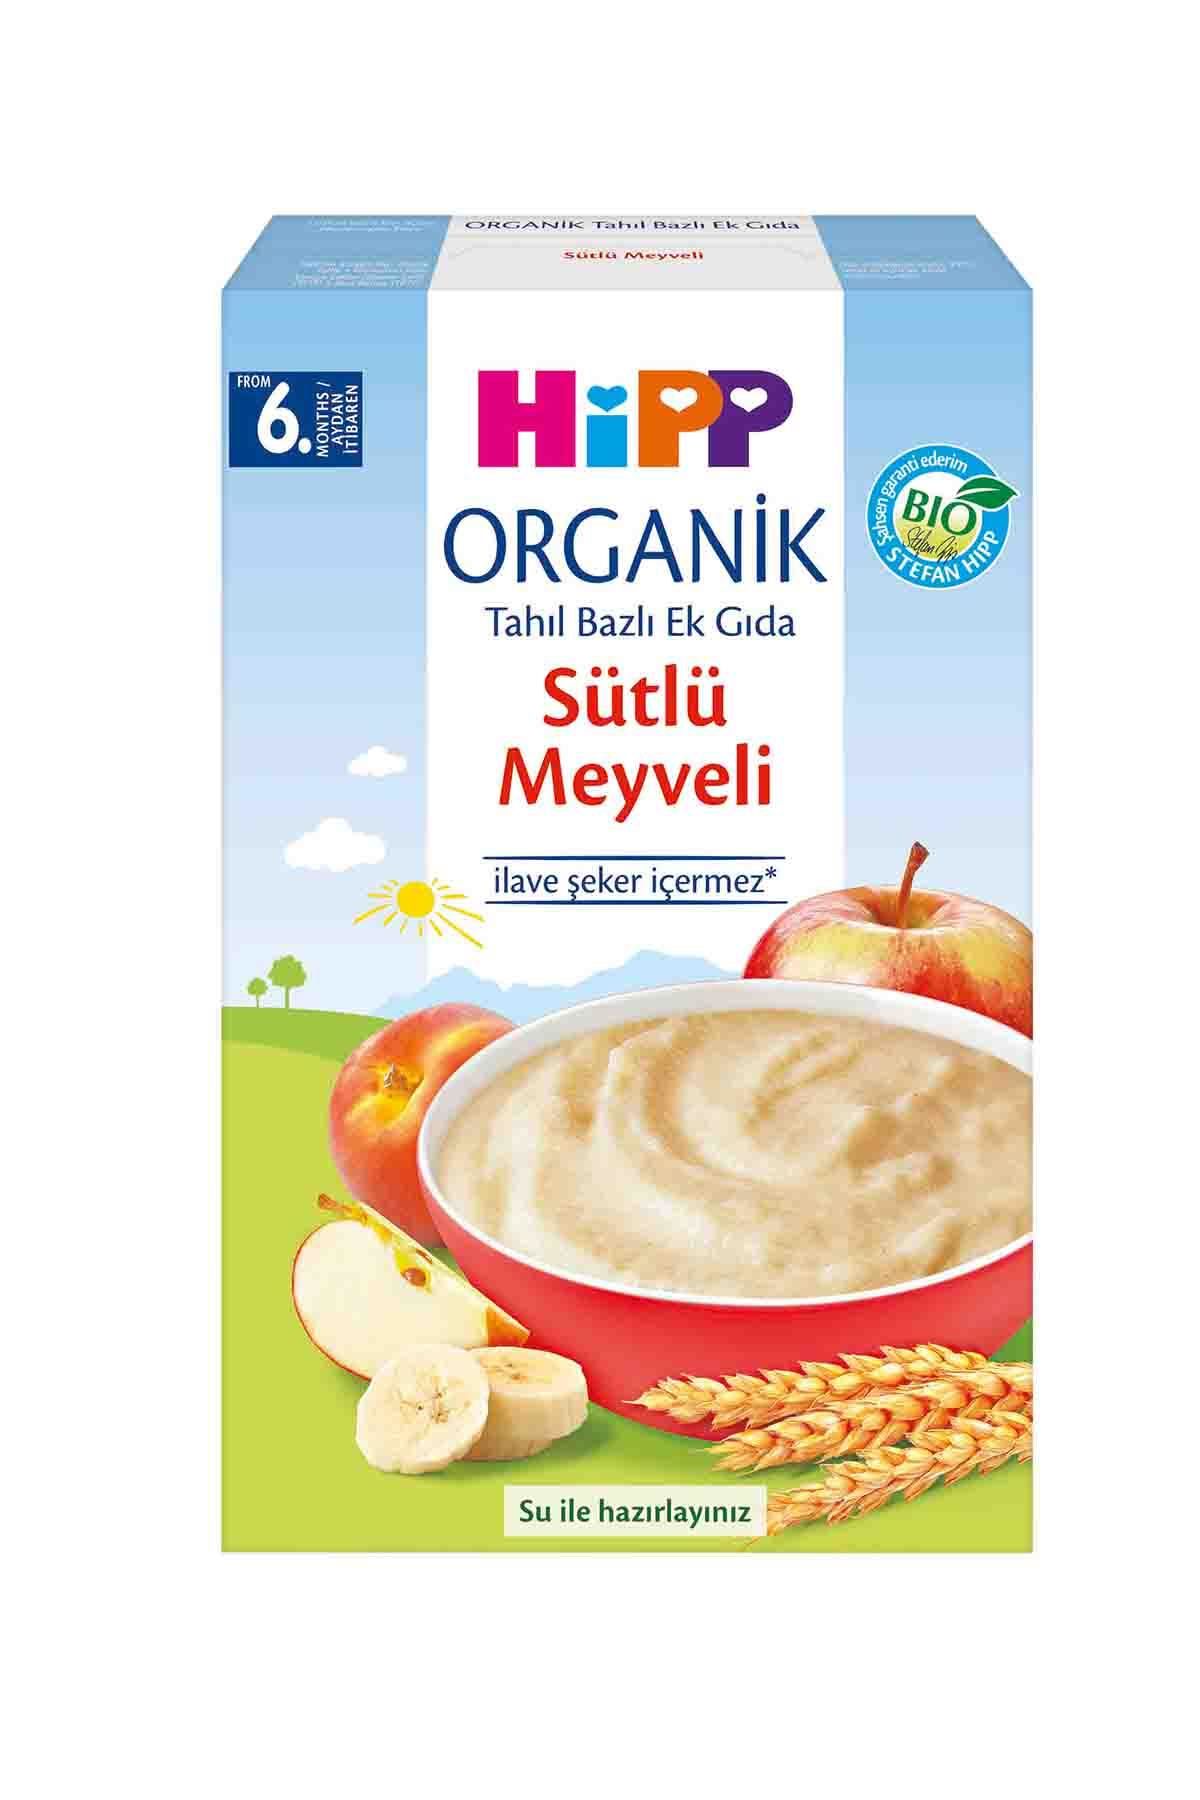 HiPP Organik Sütlü Meyveli Tahıl Bazlı Ek Gıda250g